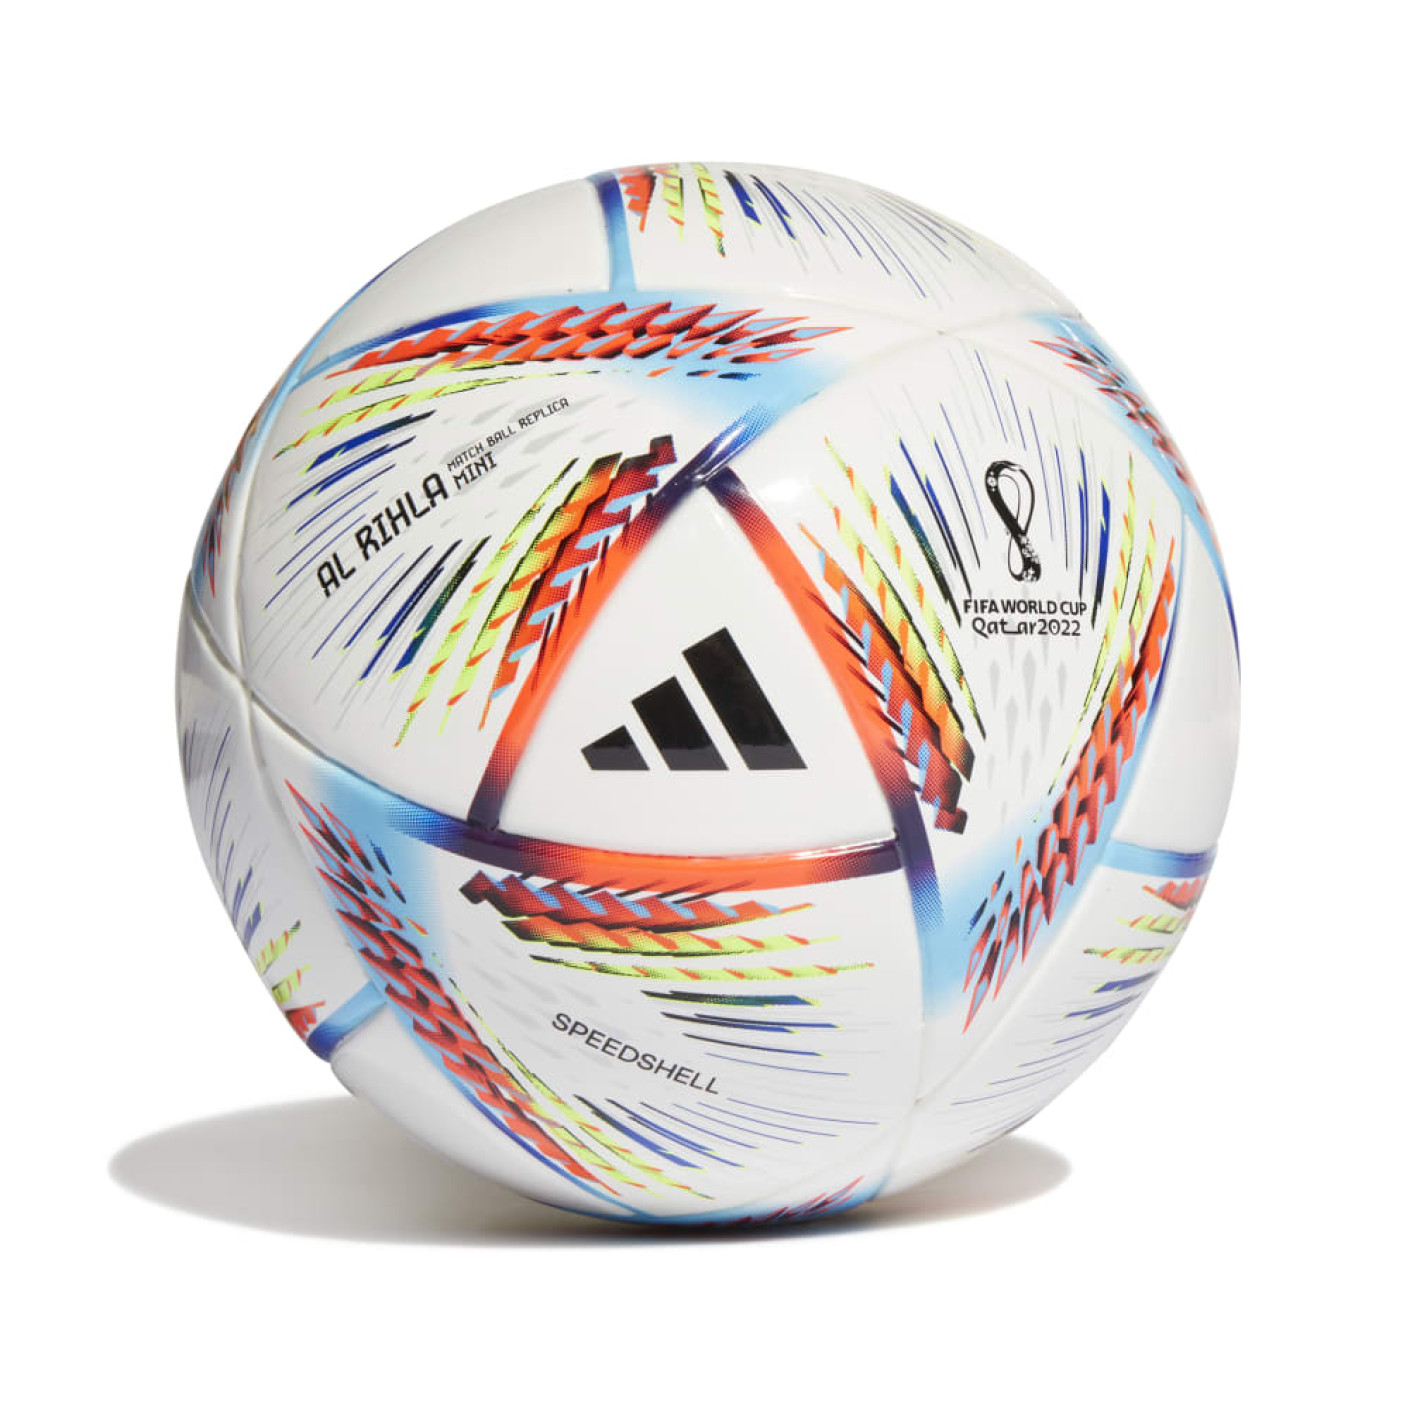 Ballon Al Rihla Officiel Coupe du Monde 2022 sur